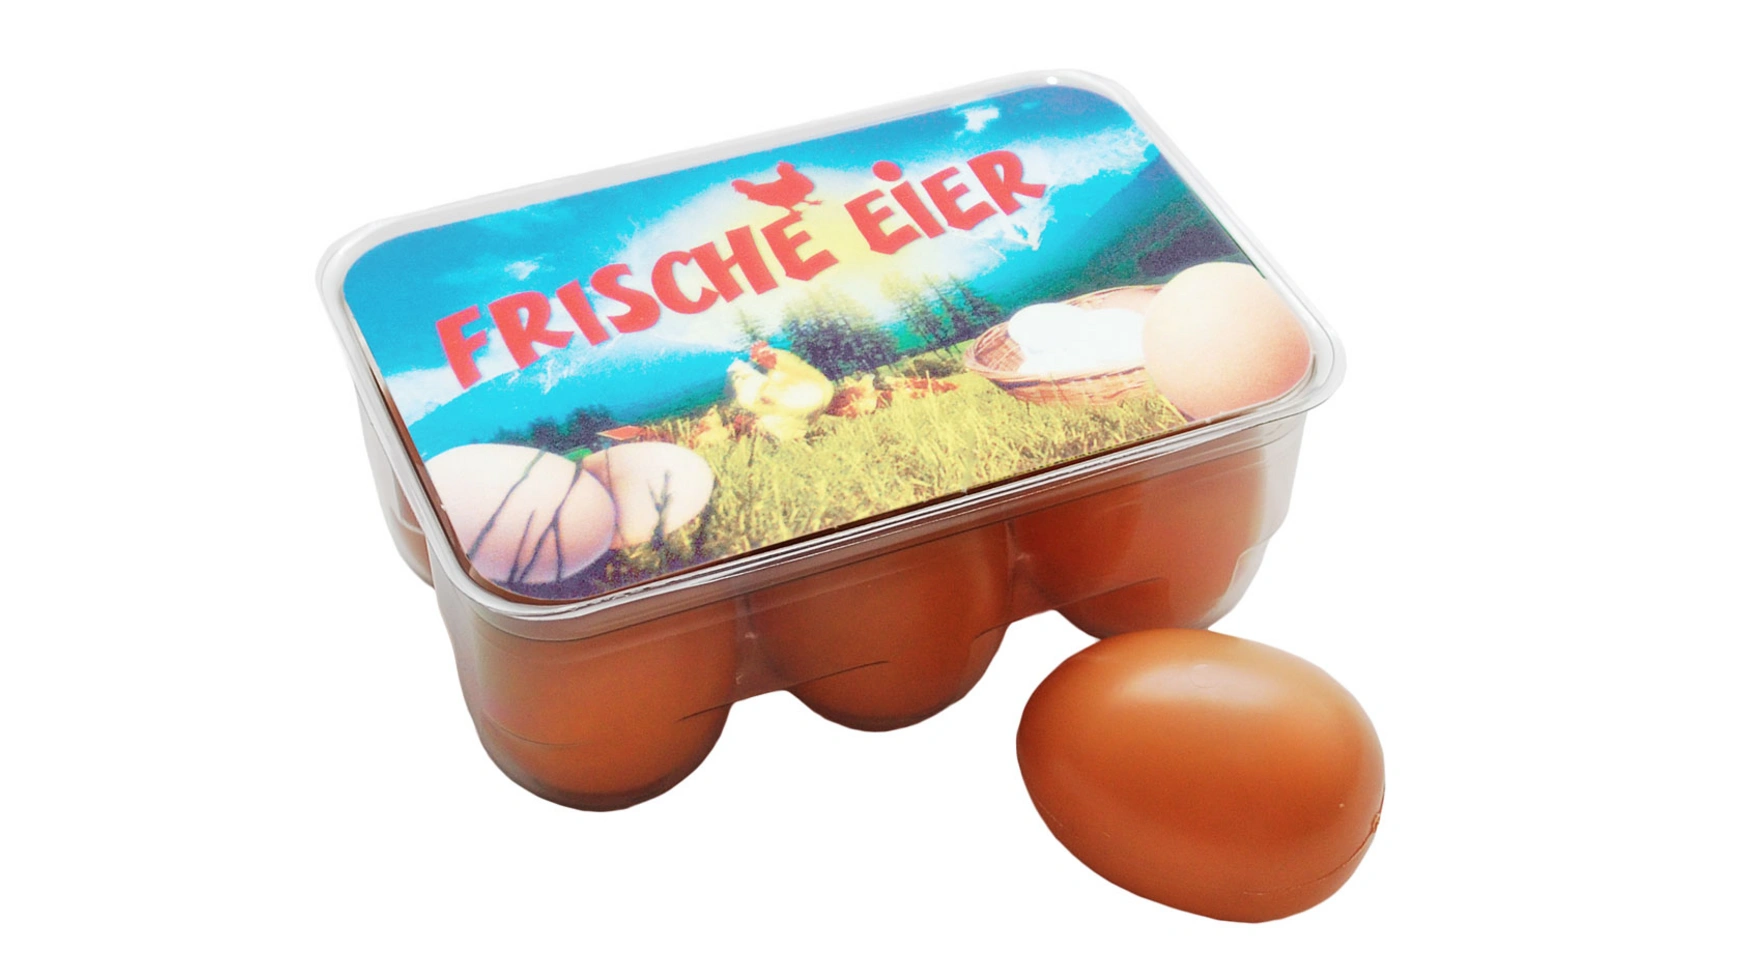 6 пластиковых яиц в коробочке для яиц Tanner новинка стальные ножницы для открывания яиц ручные инструменты для яиц кухонные аксессуары для выпечки яиц инструмент для разделения яи